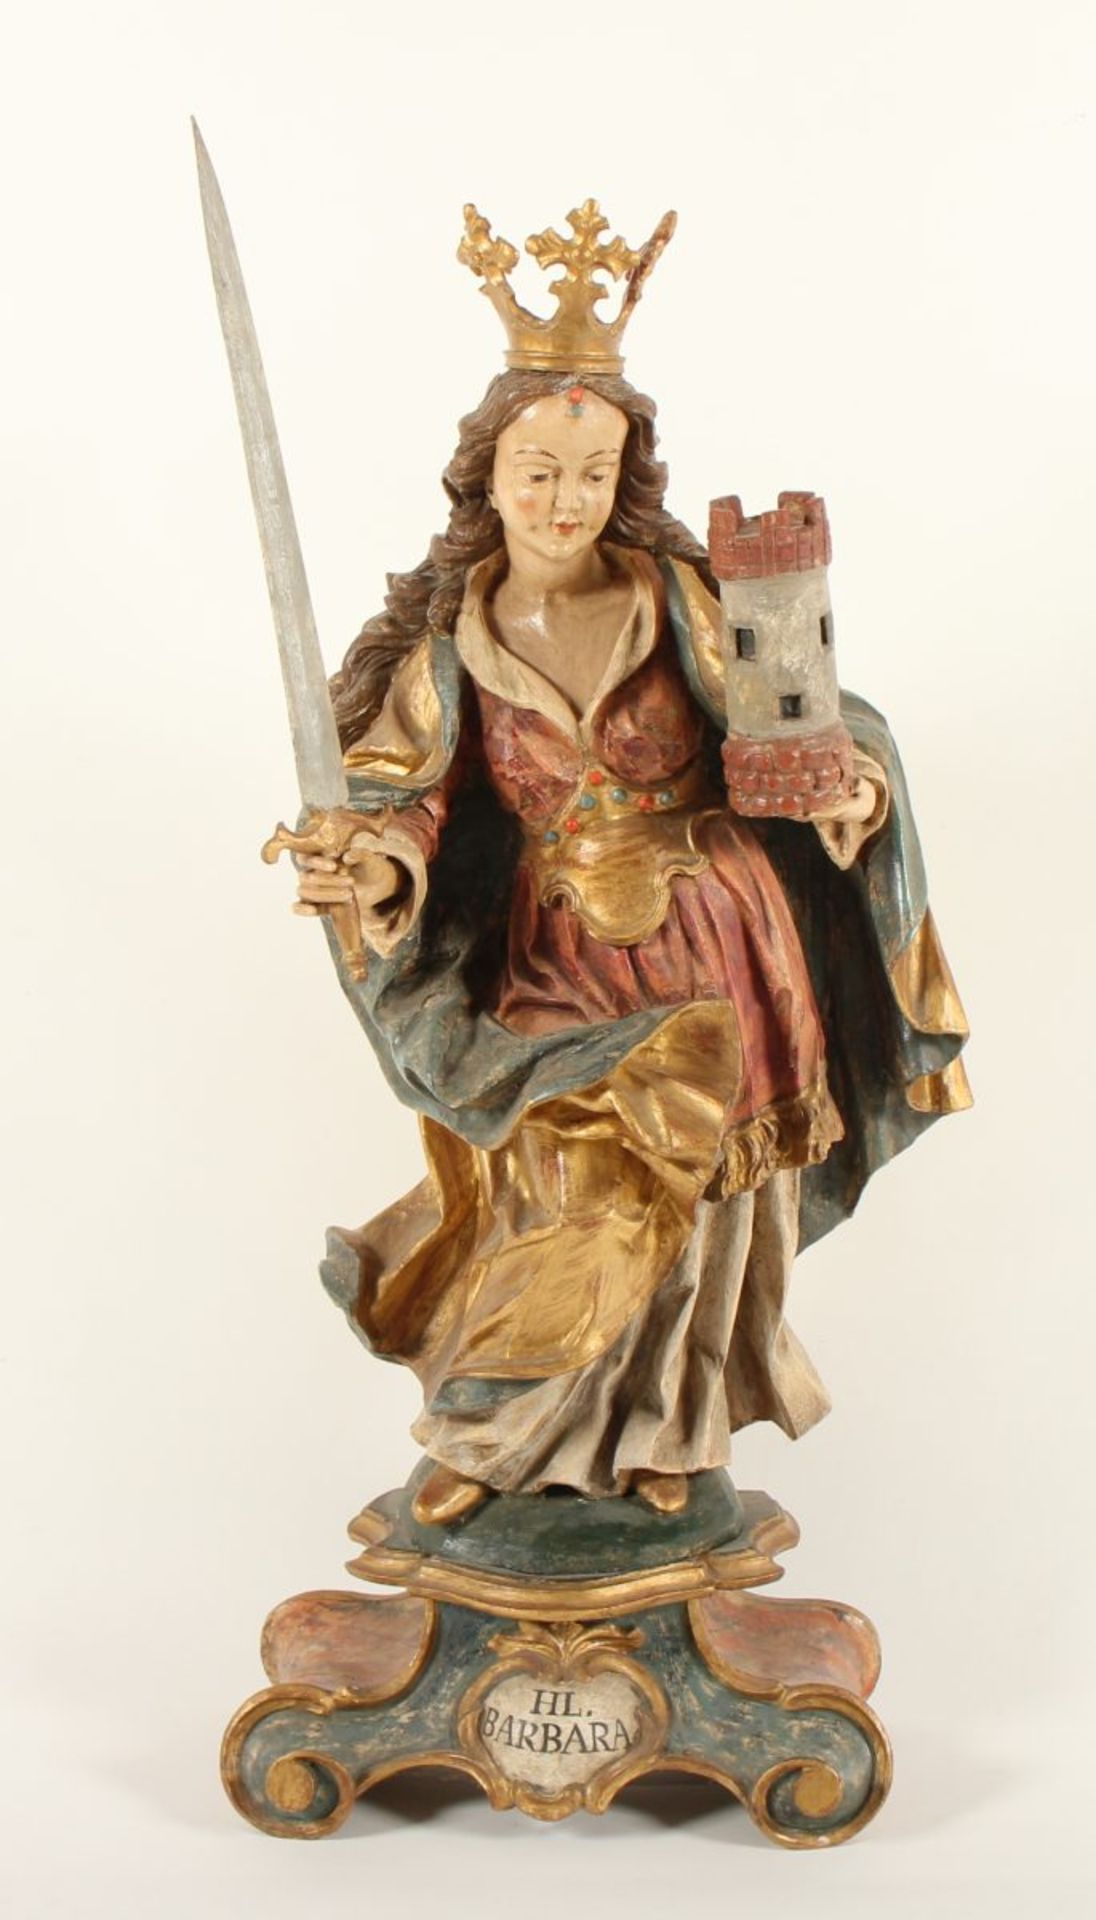 HEILIGE BARBARA, mit Turm und Schwert, Holz, geschnitzt, farbig gefasst, goldbemalt, H 80 (inkl.